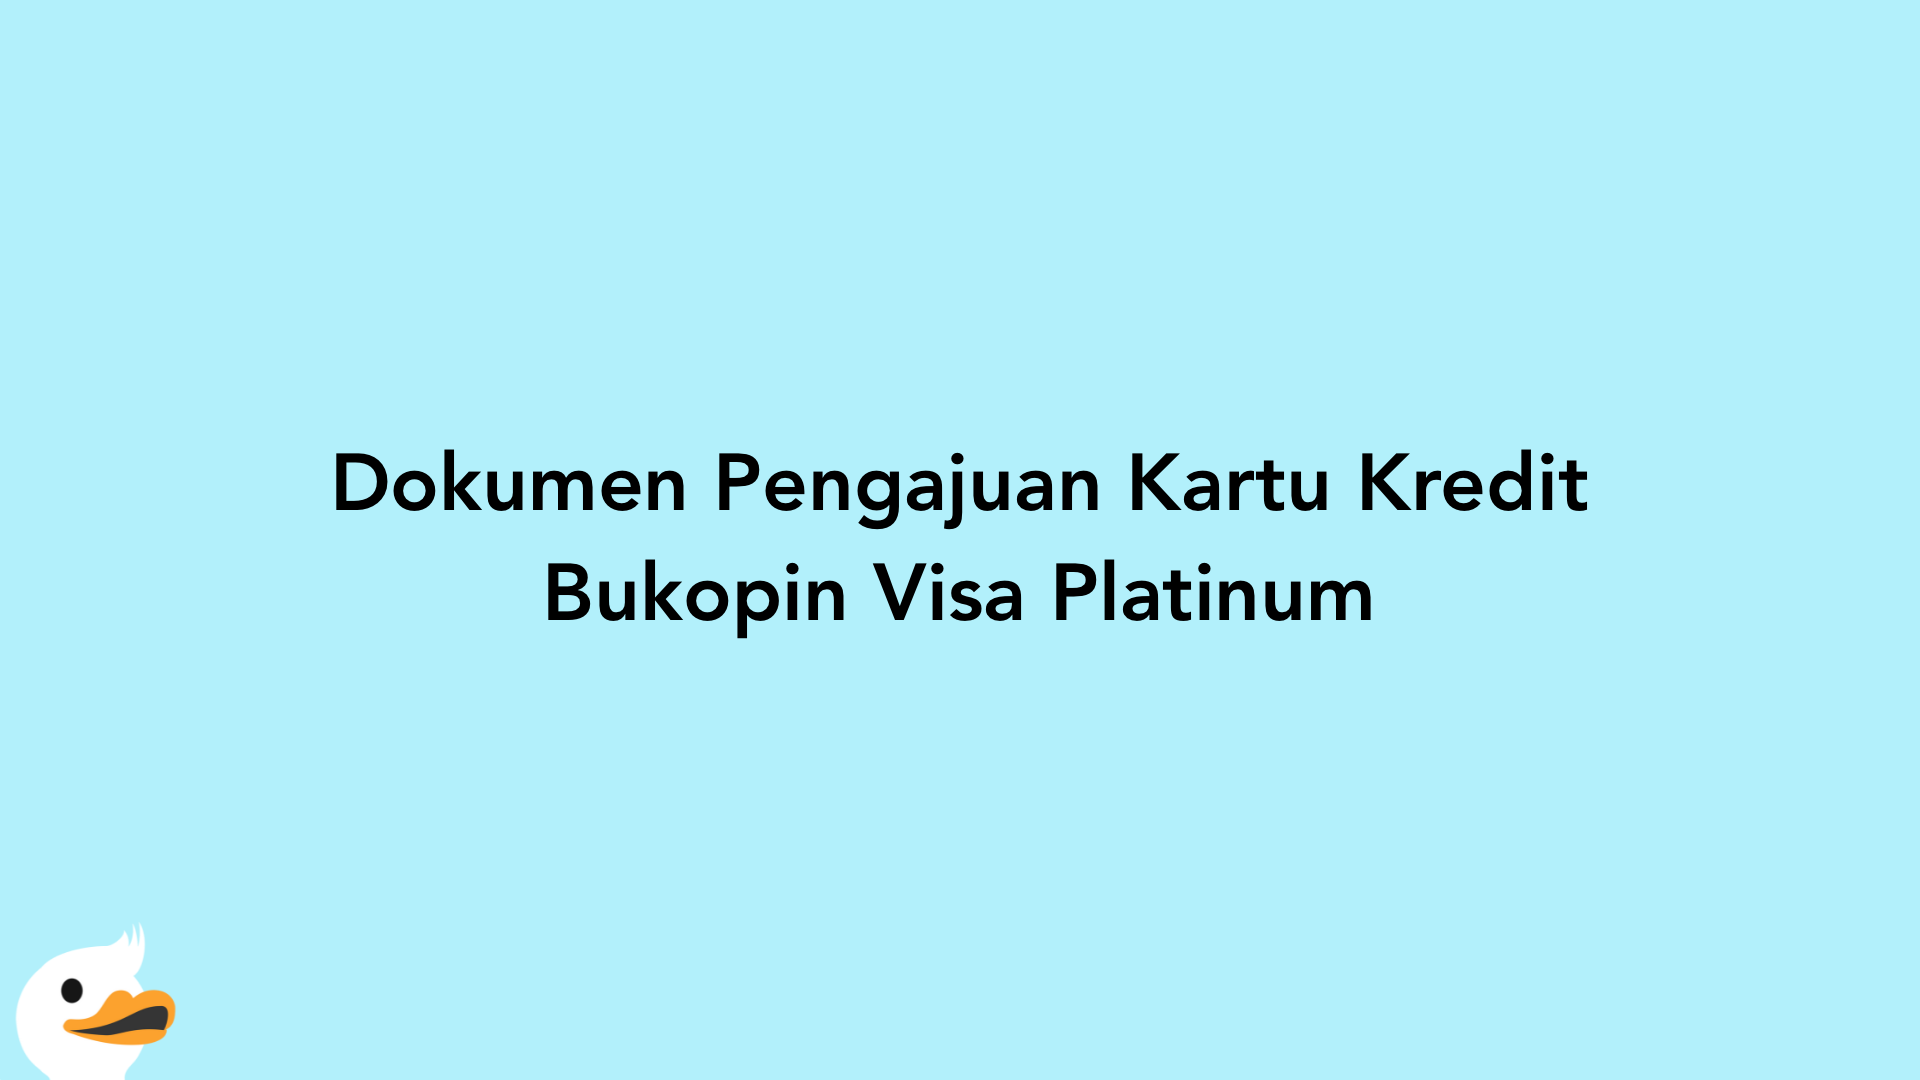 Dokumen Pengajuan Kartu Kredit Bukopin Visa Platinum